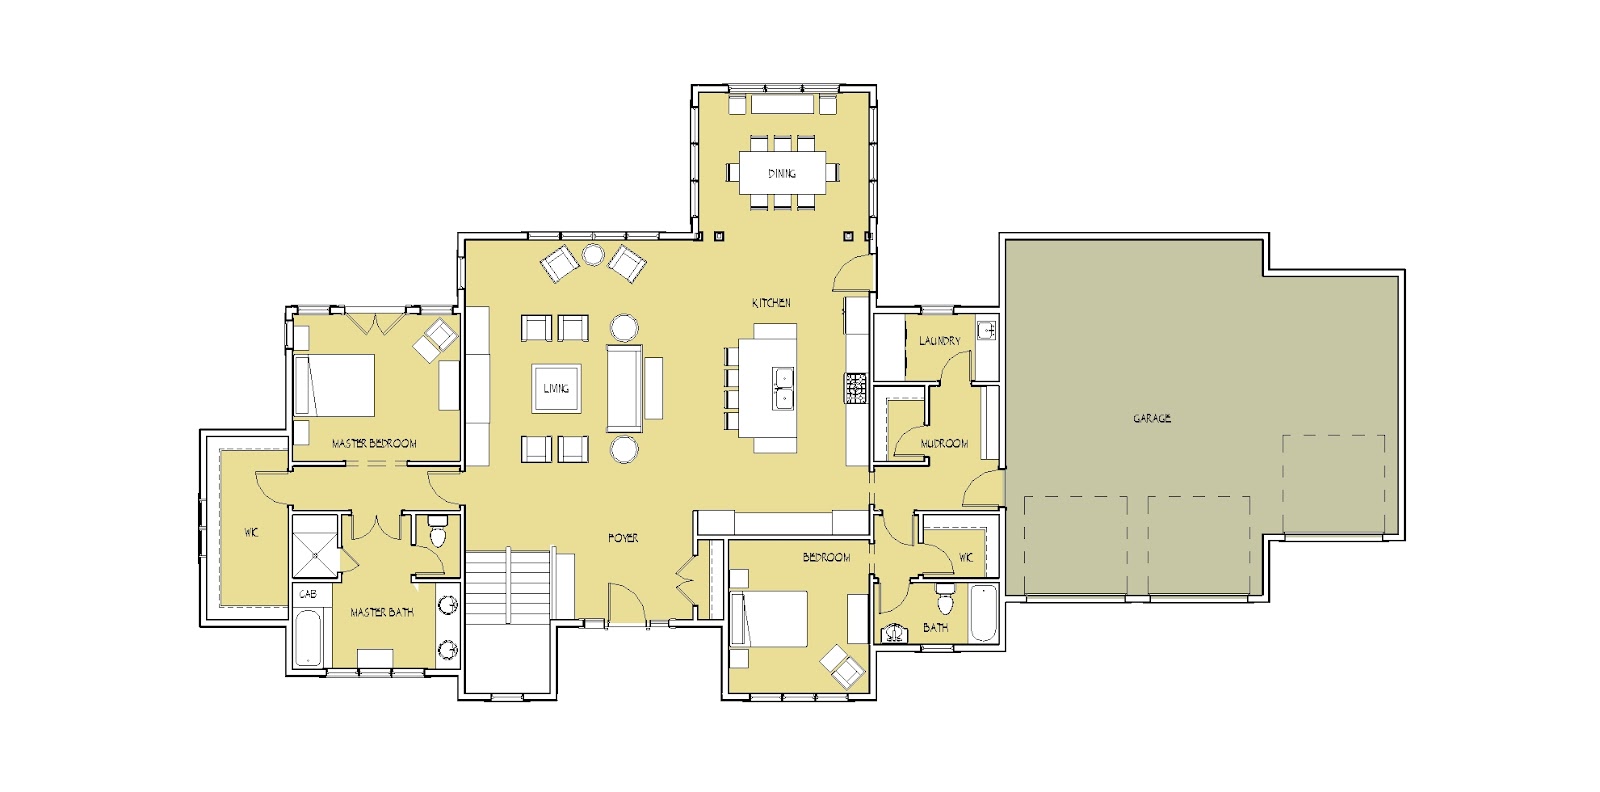 open floor plan with vaulted ceiling and main floor master bedroom suite